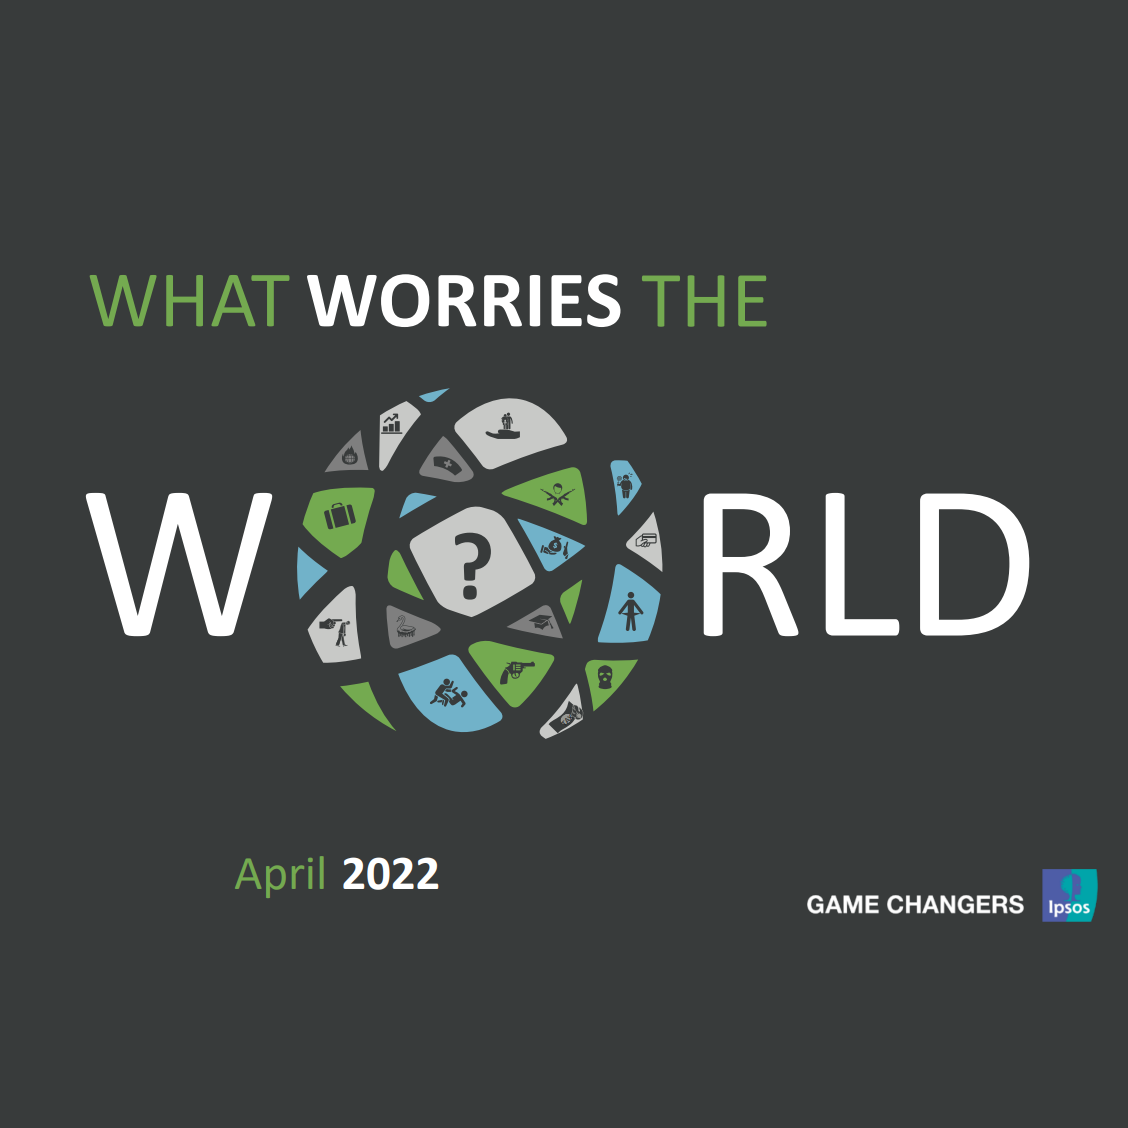 Estudio: Ipsos – Preocupaciones del mundo Abril 2022